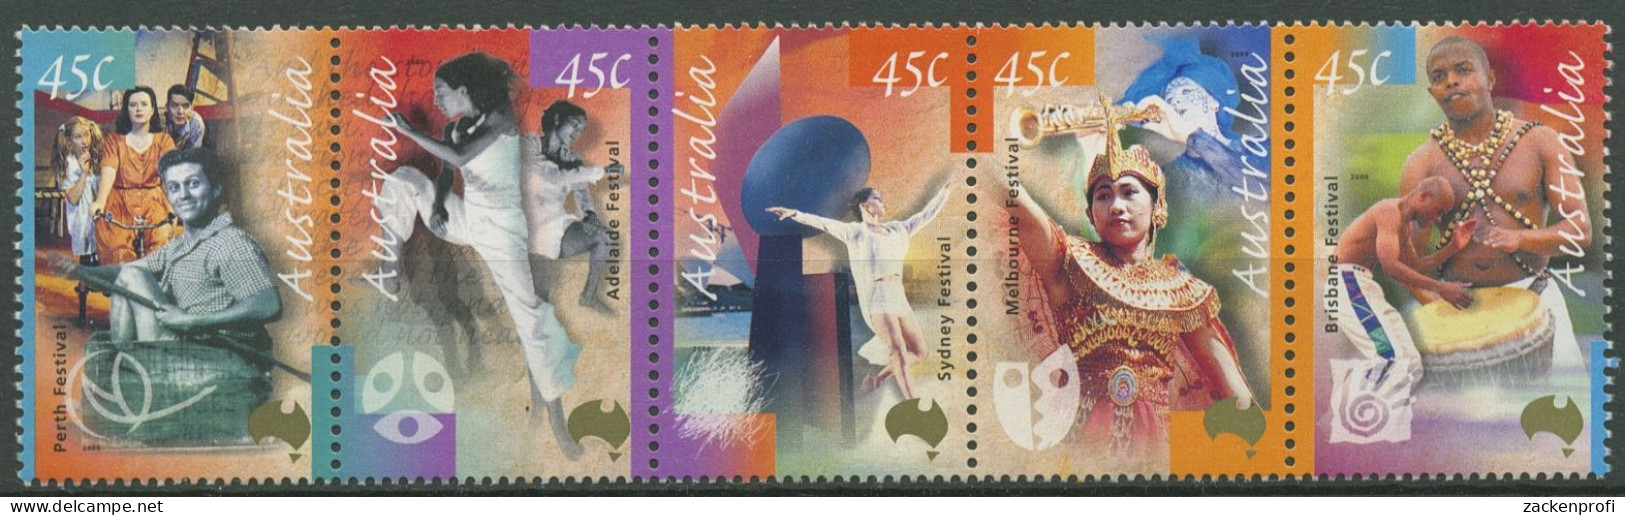 Australien 2000 Kunstfestivals Tänzer Musiker 1902/06 ZD Postfrisch (C29437) - Mint Stamps